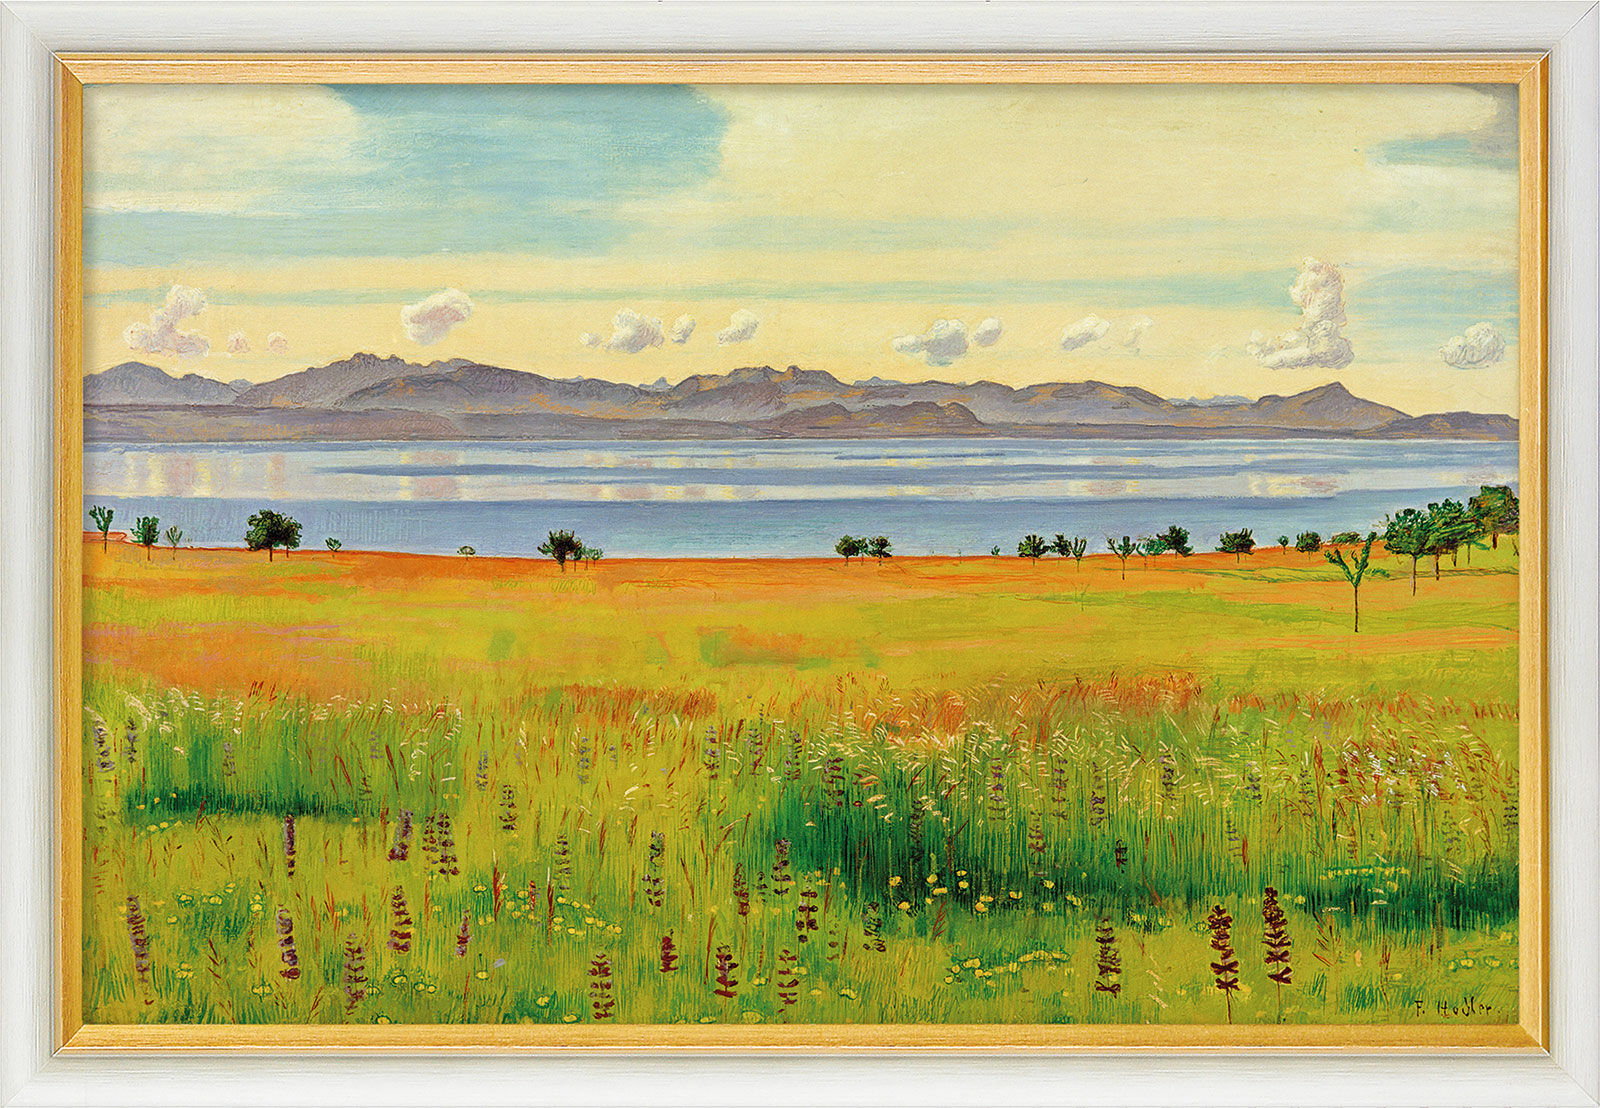 Tableau "Lac Léman depuis Saint-Prex" (1901), encadré von Ferdinand Hodler